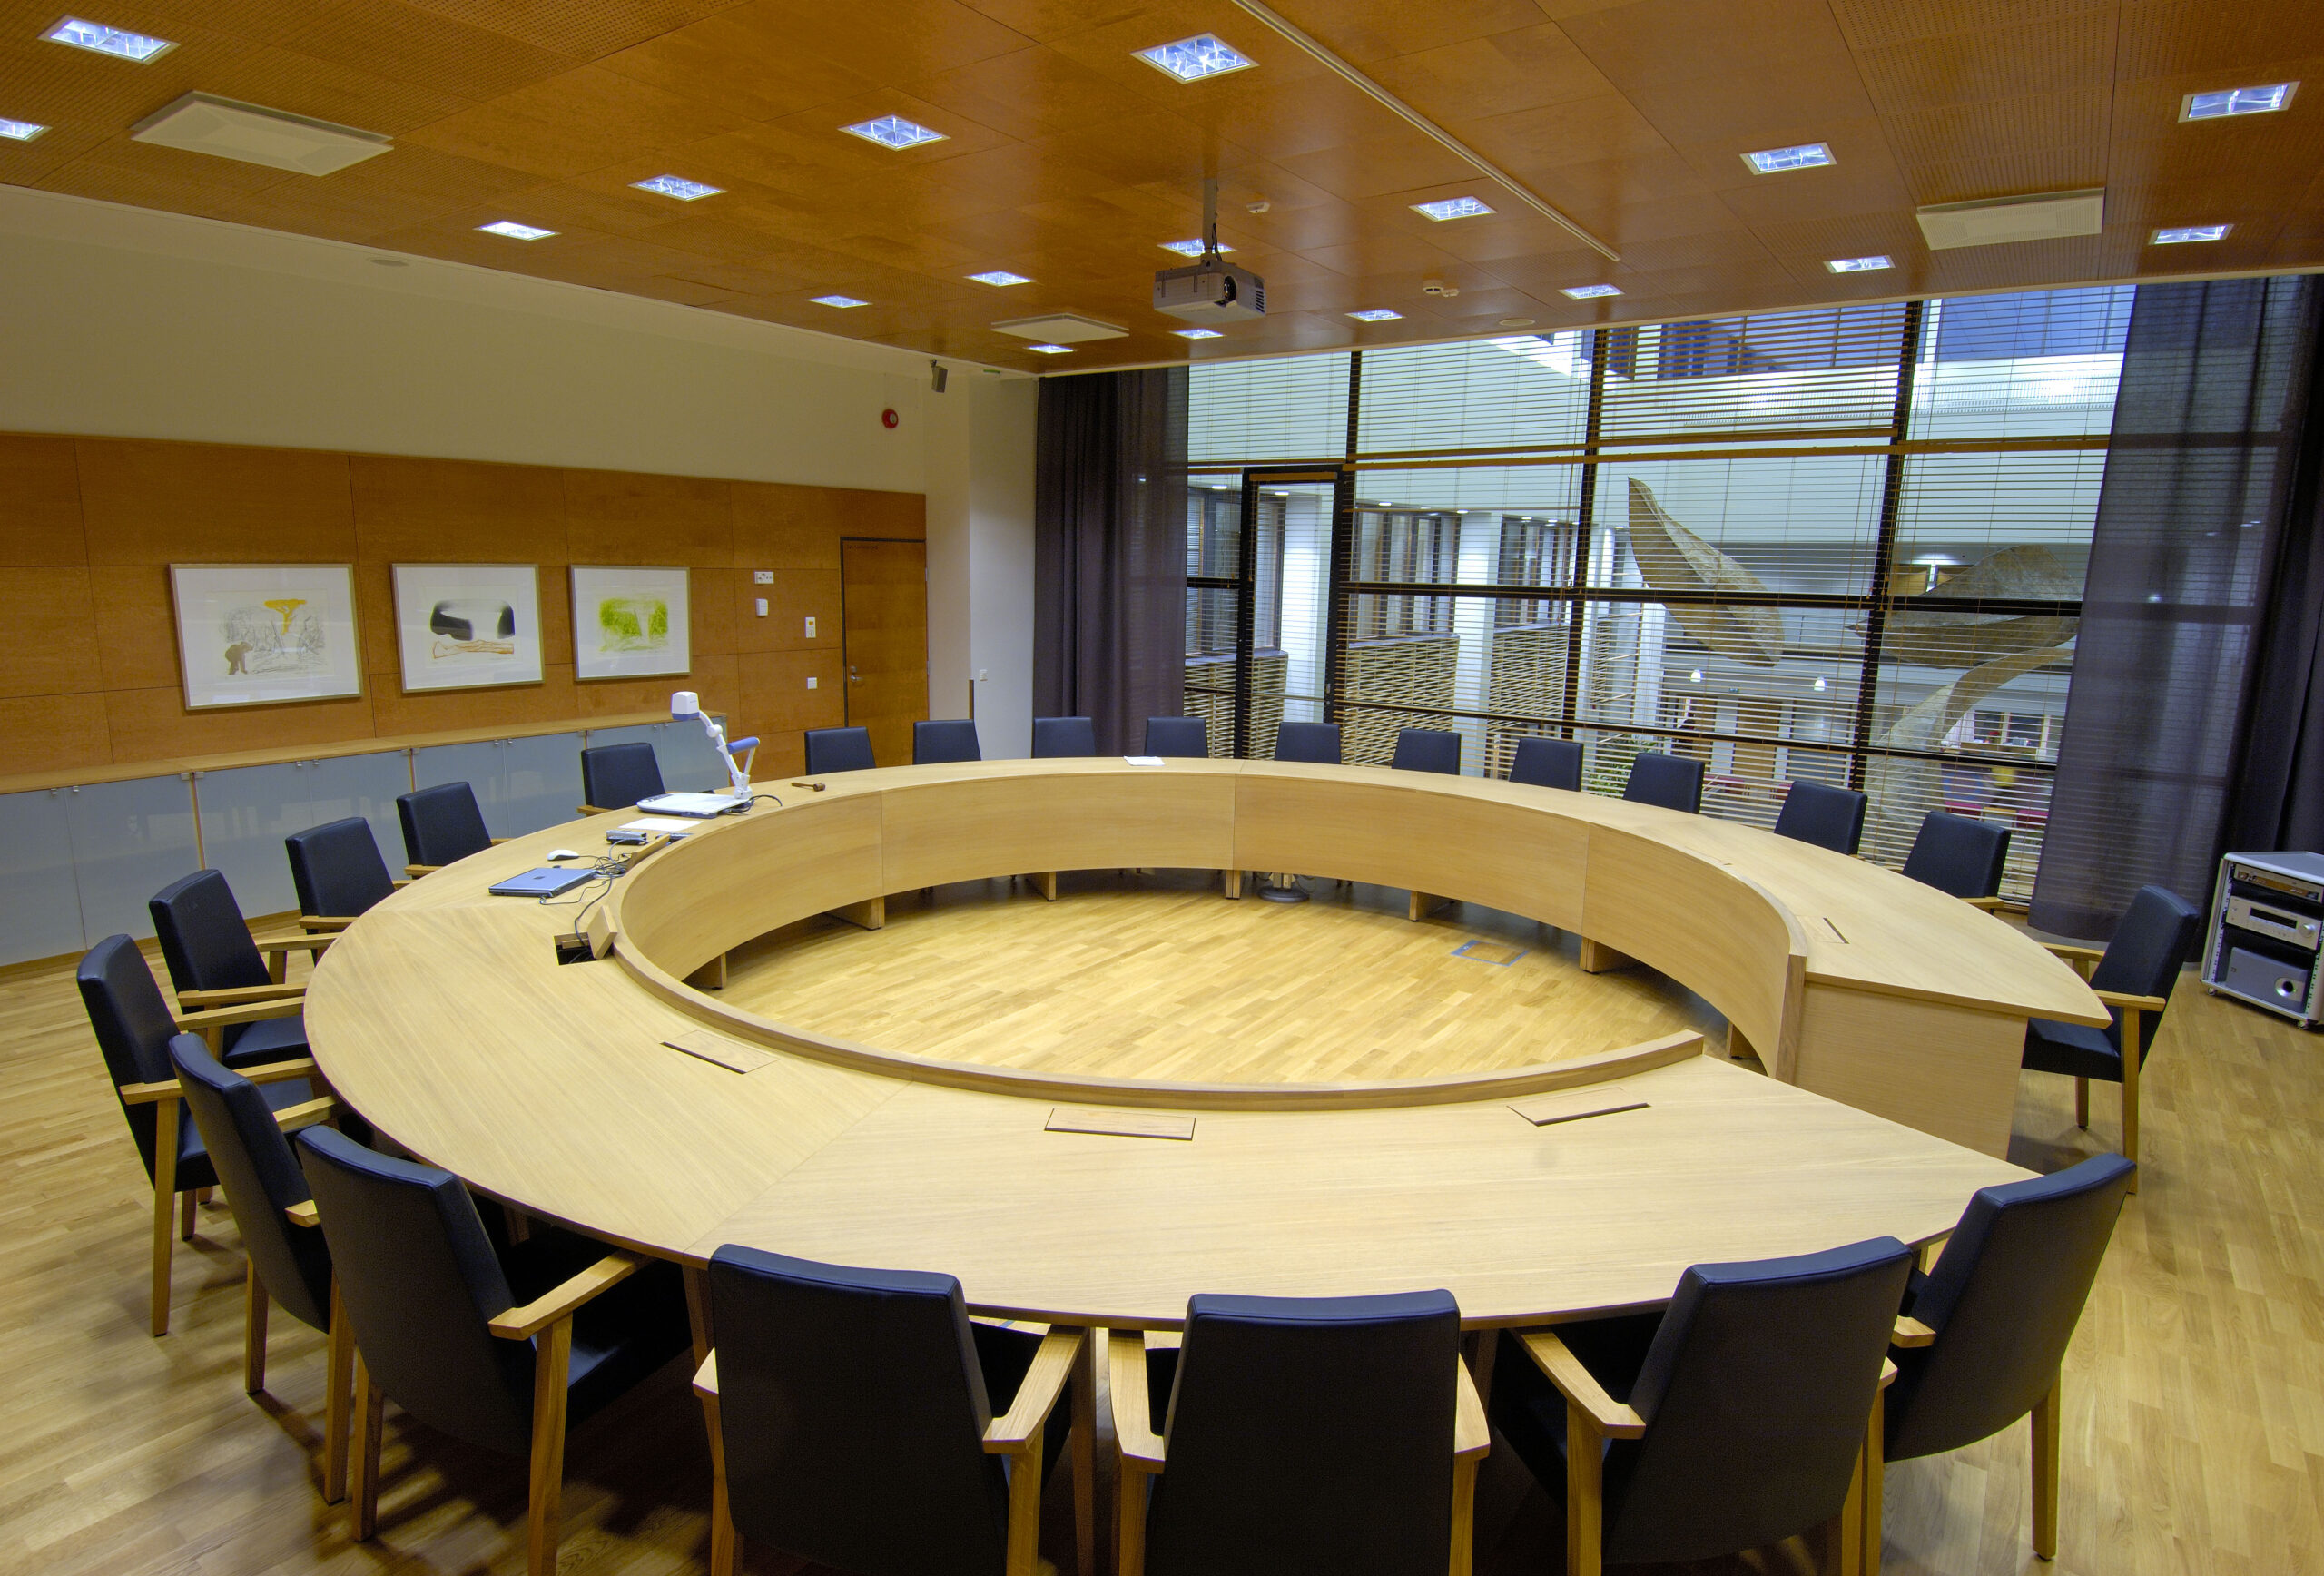 Kokoushuone, jossa on iso pöytä ja tuoleja ympärillä.